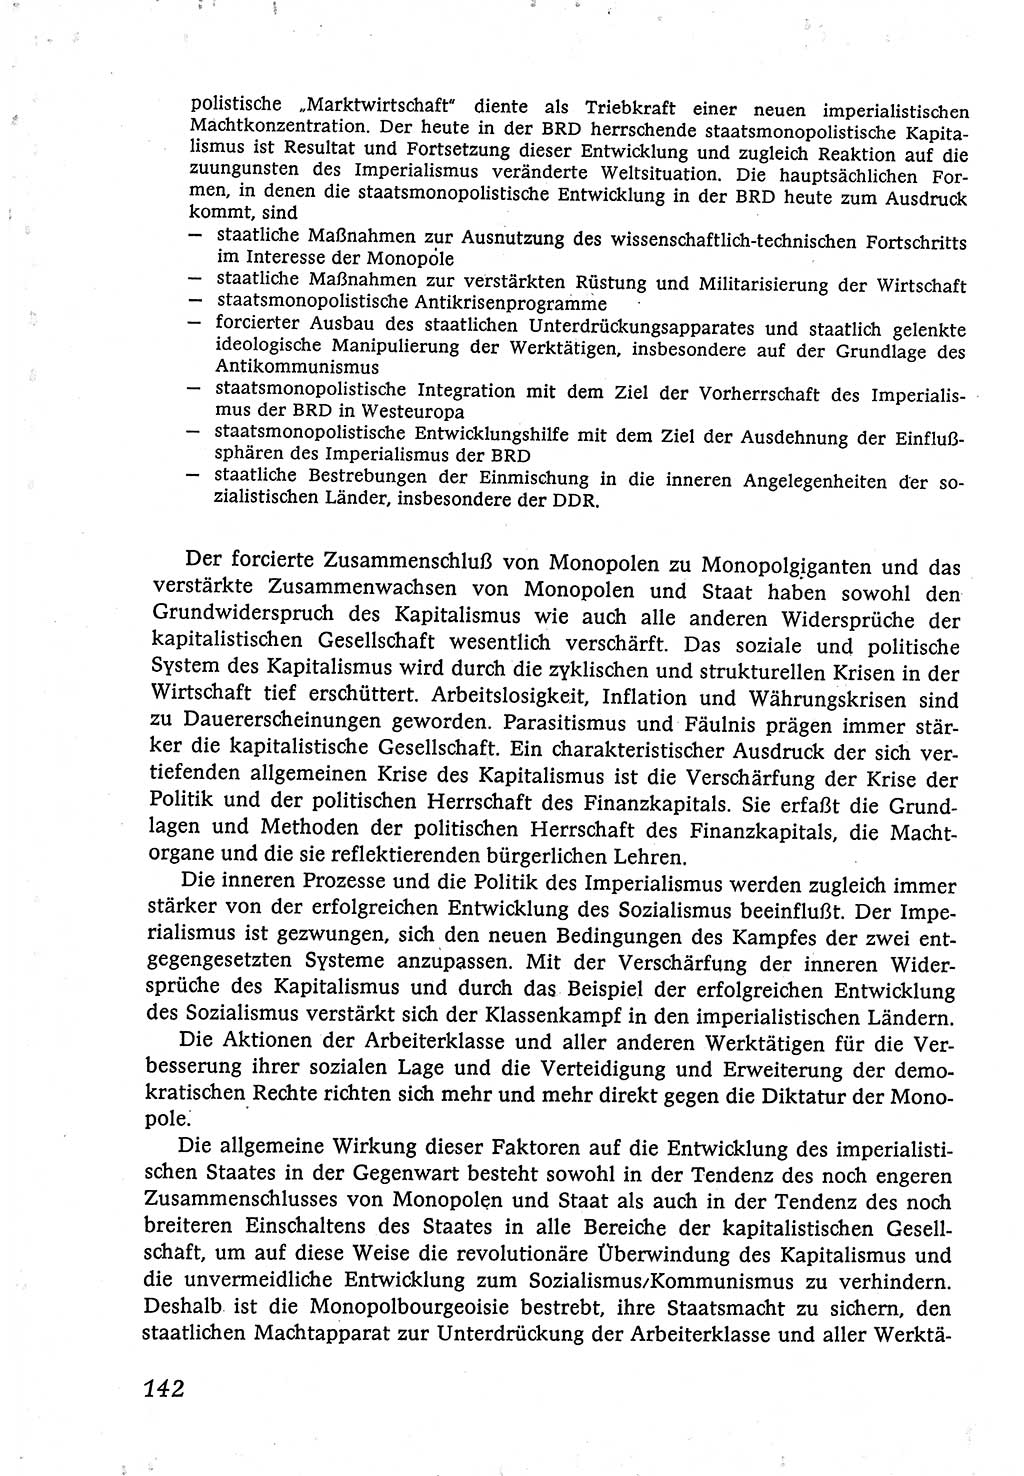 Marxistisch-leninistische (ML) Staats- und Rechtstheorie [Deutsche Demokratische Republik (DDR)], Lehrbuch 1980, Seite 142 (ML St.-R.-Th. DDR Lb. 1980, S. 142)